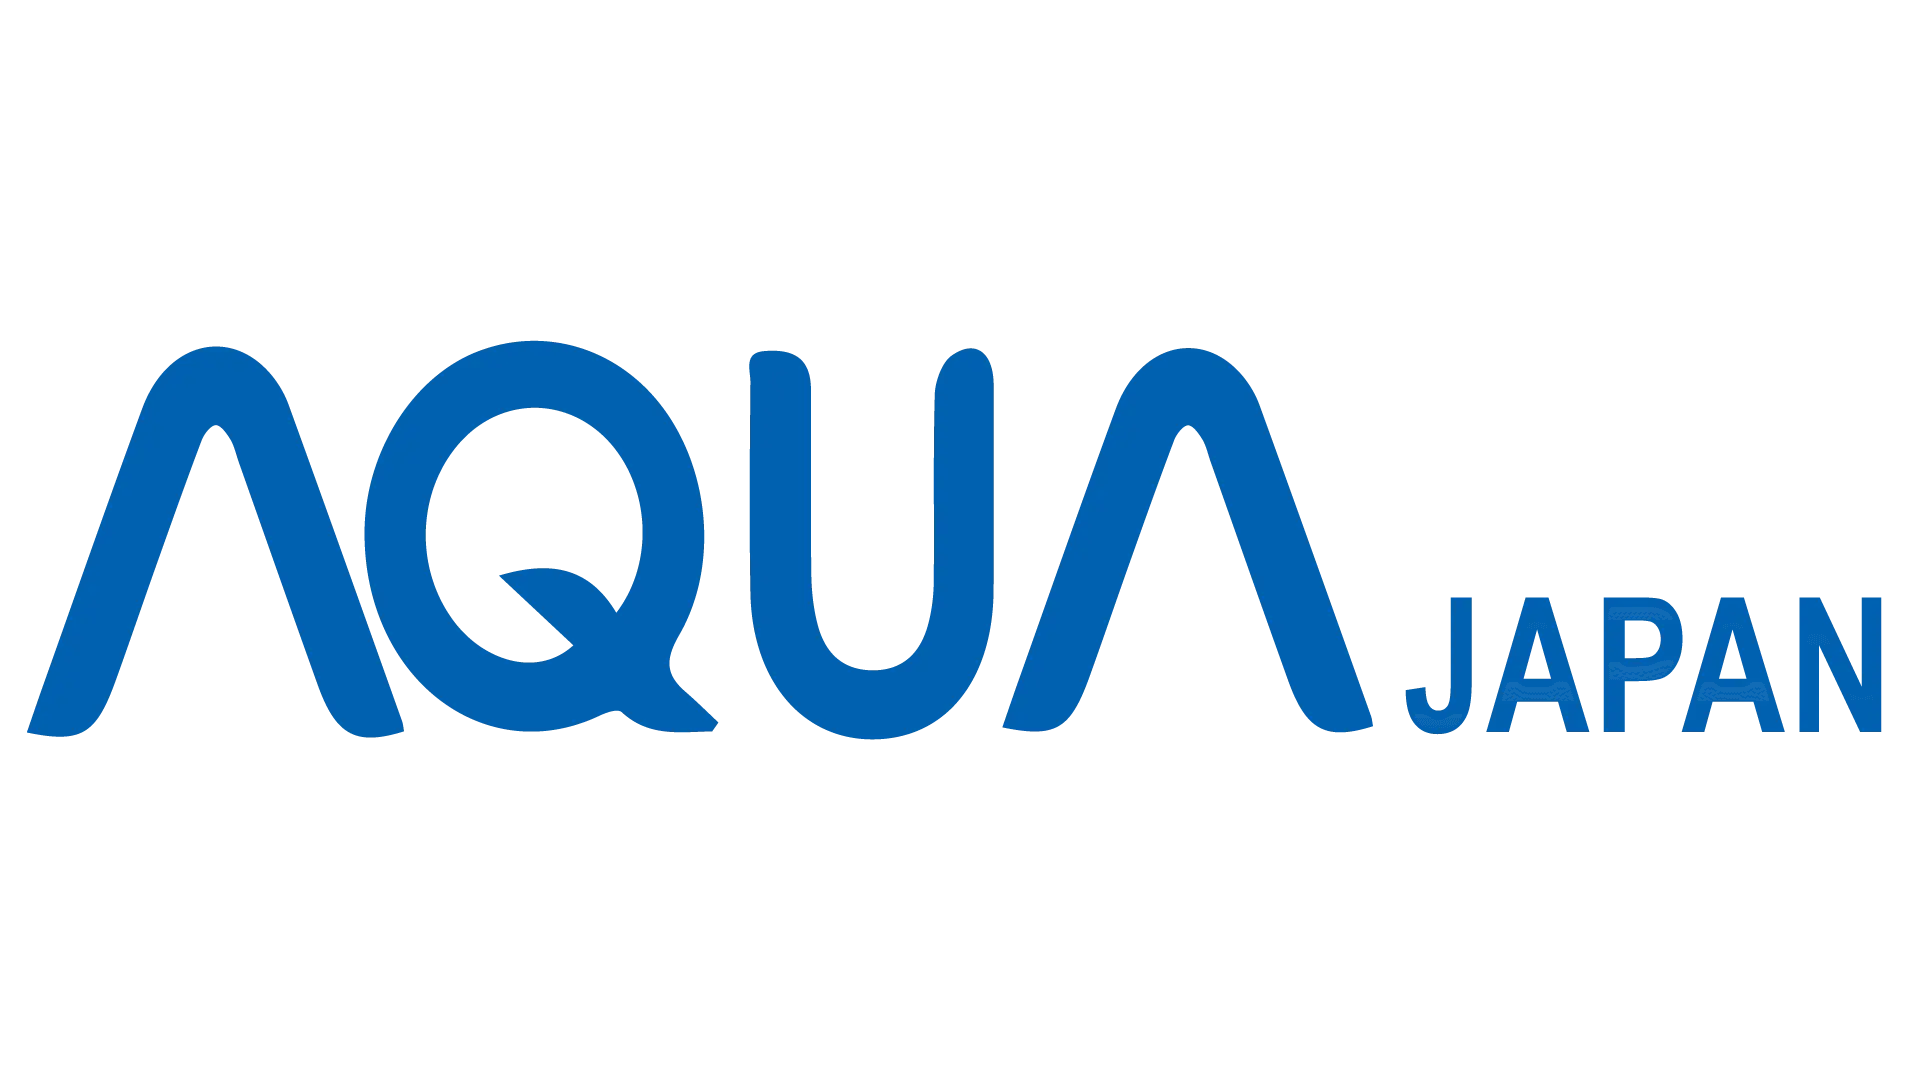 WhatsApp untuk industri elektronik yang dimiliki oleh perusahaan Aqua Japan